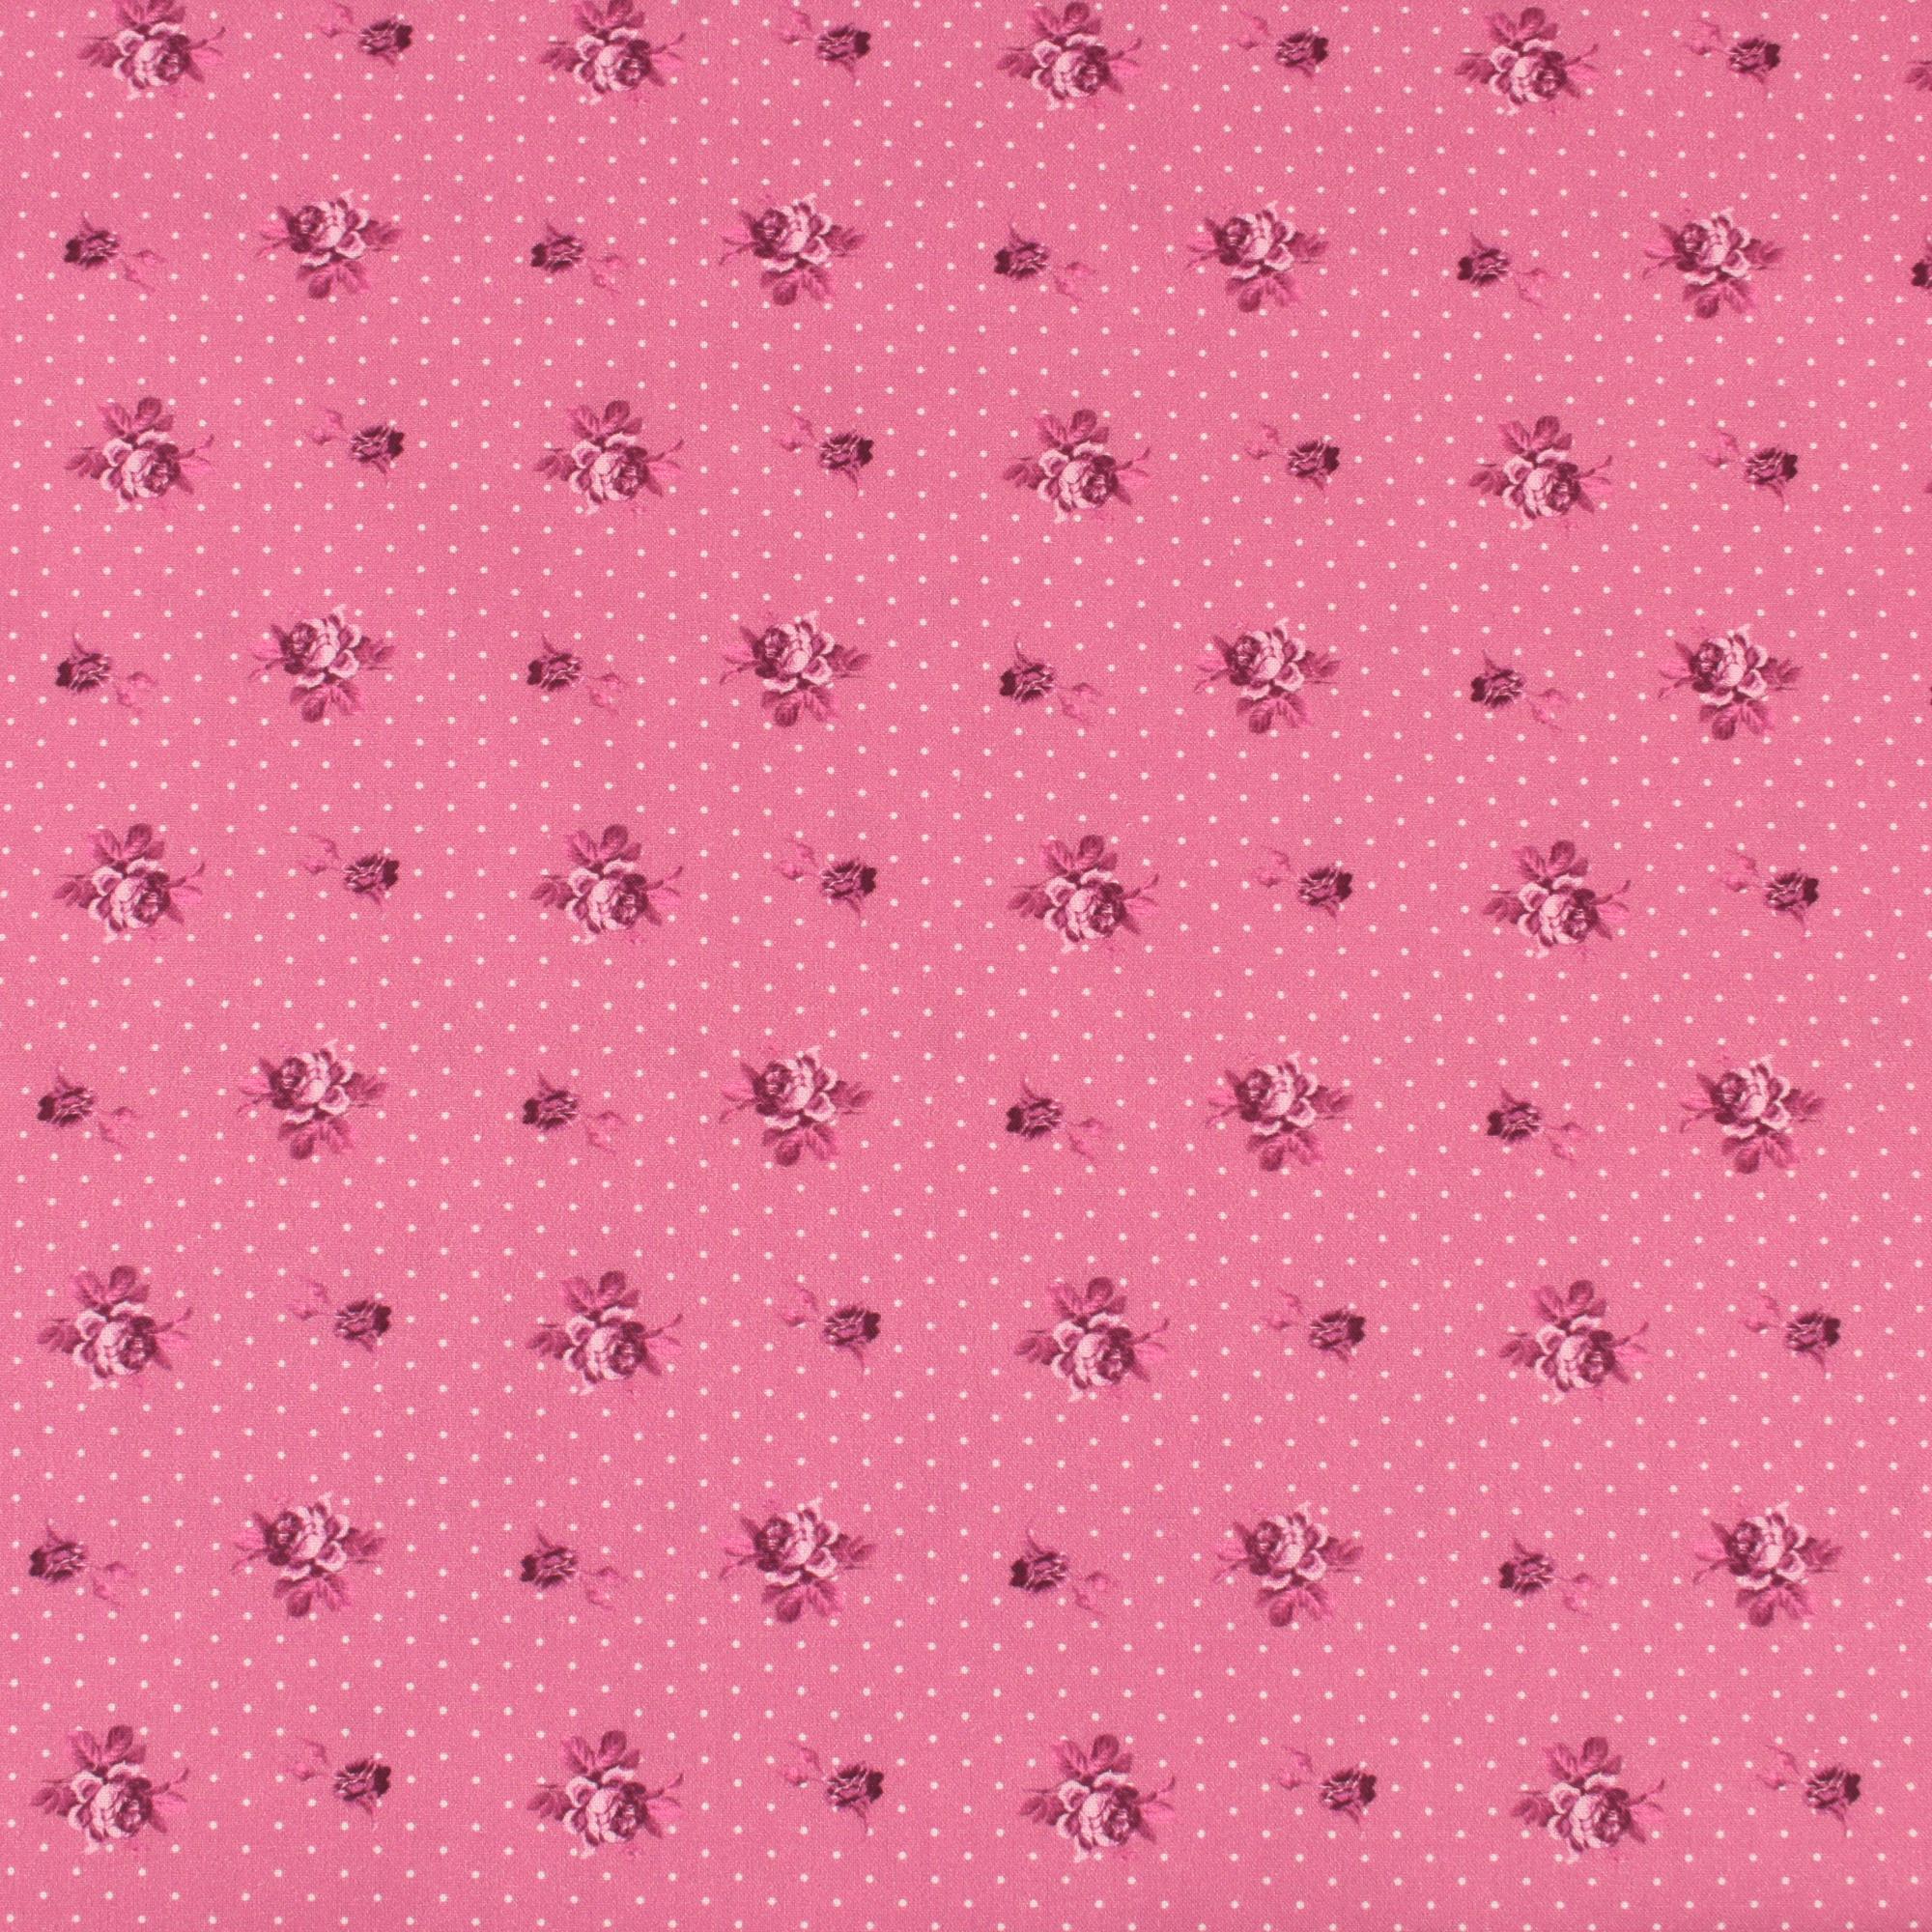 Stoff Meterware kleine Rosen Punkte Pink Baumwolle Perkal